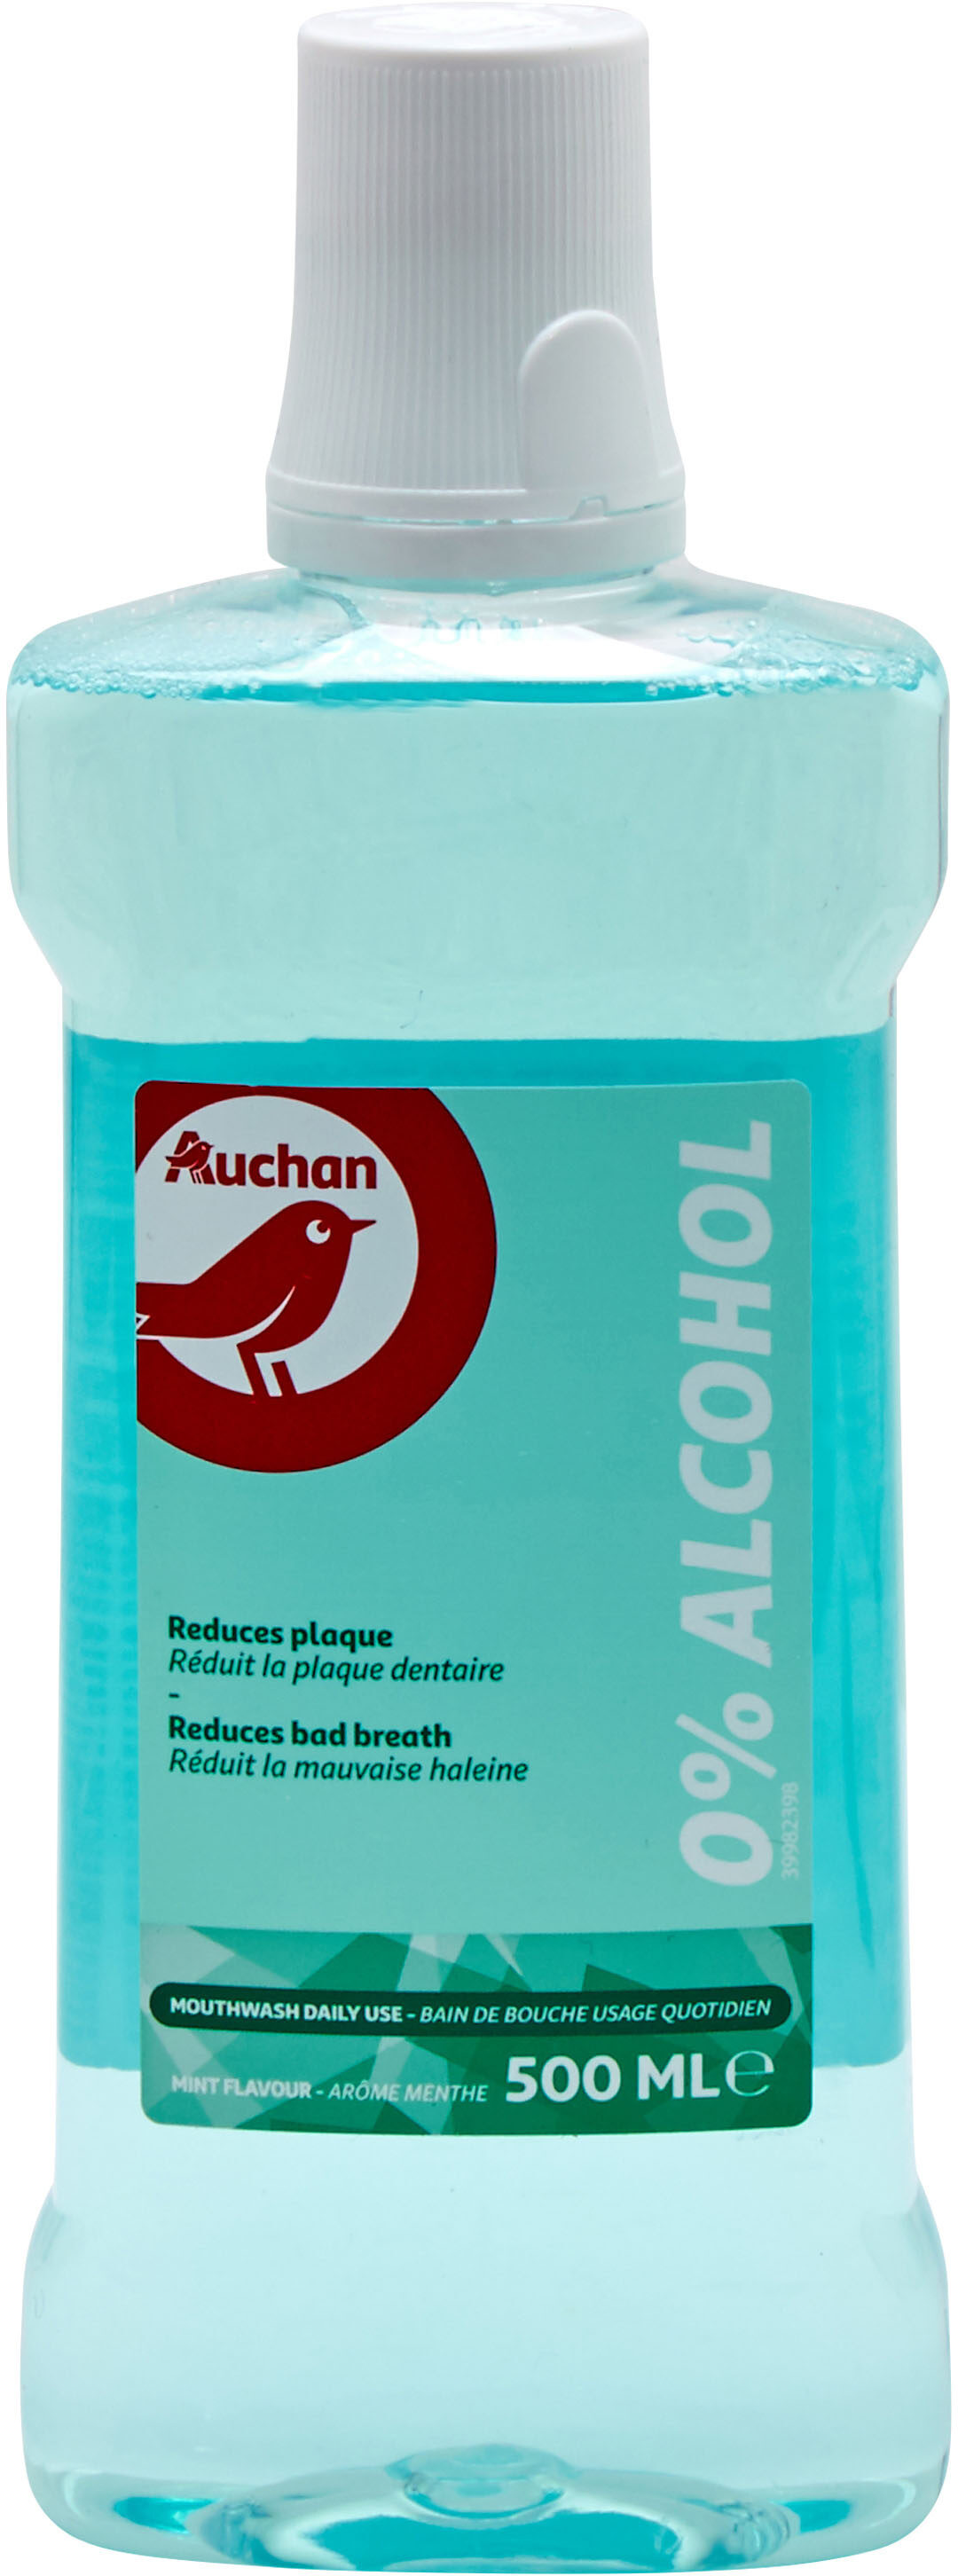 Auchan - bain de bouche - fraicheur 0% alcool - 500ml - Product - fr